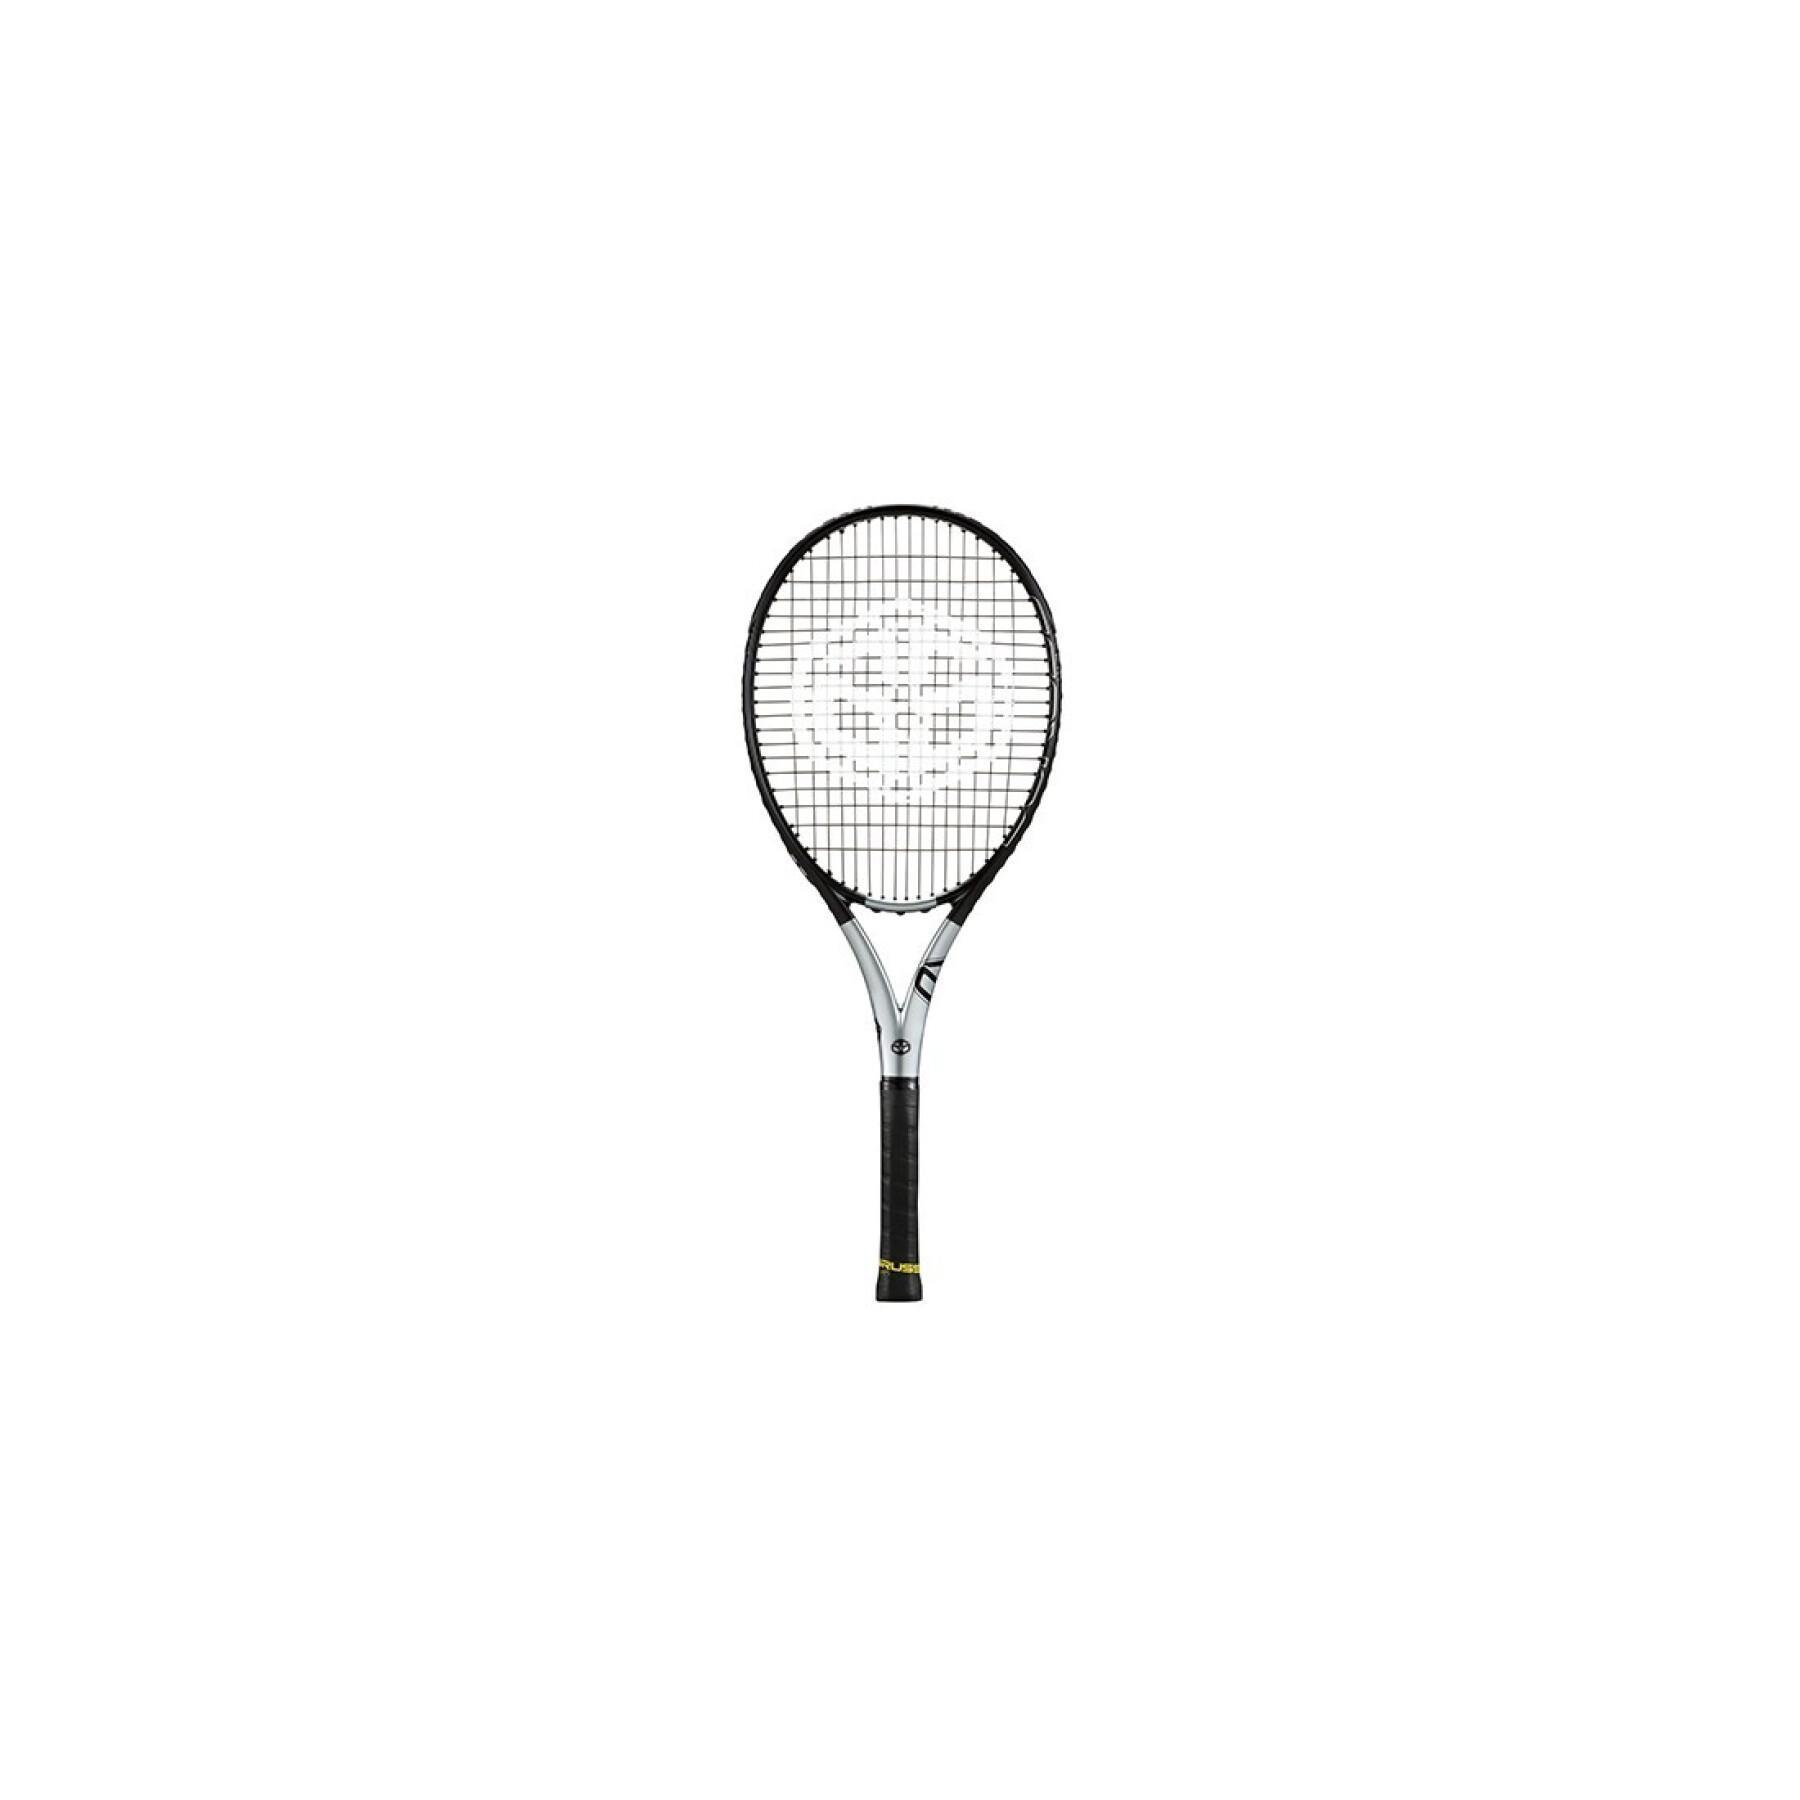 Raqueta de tenis Duruss Ceylonite